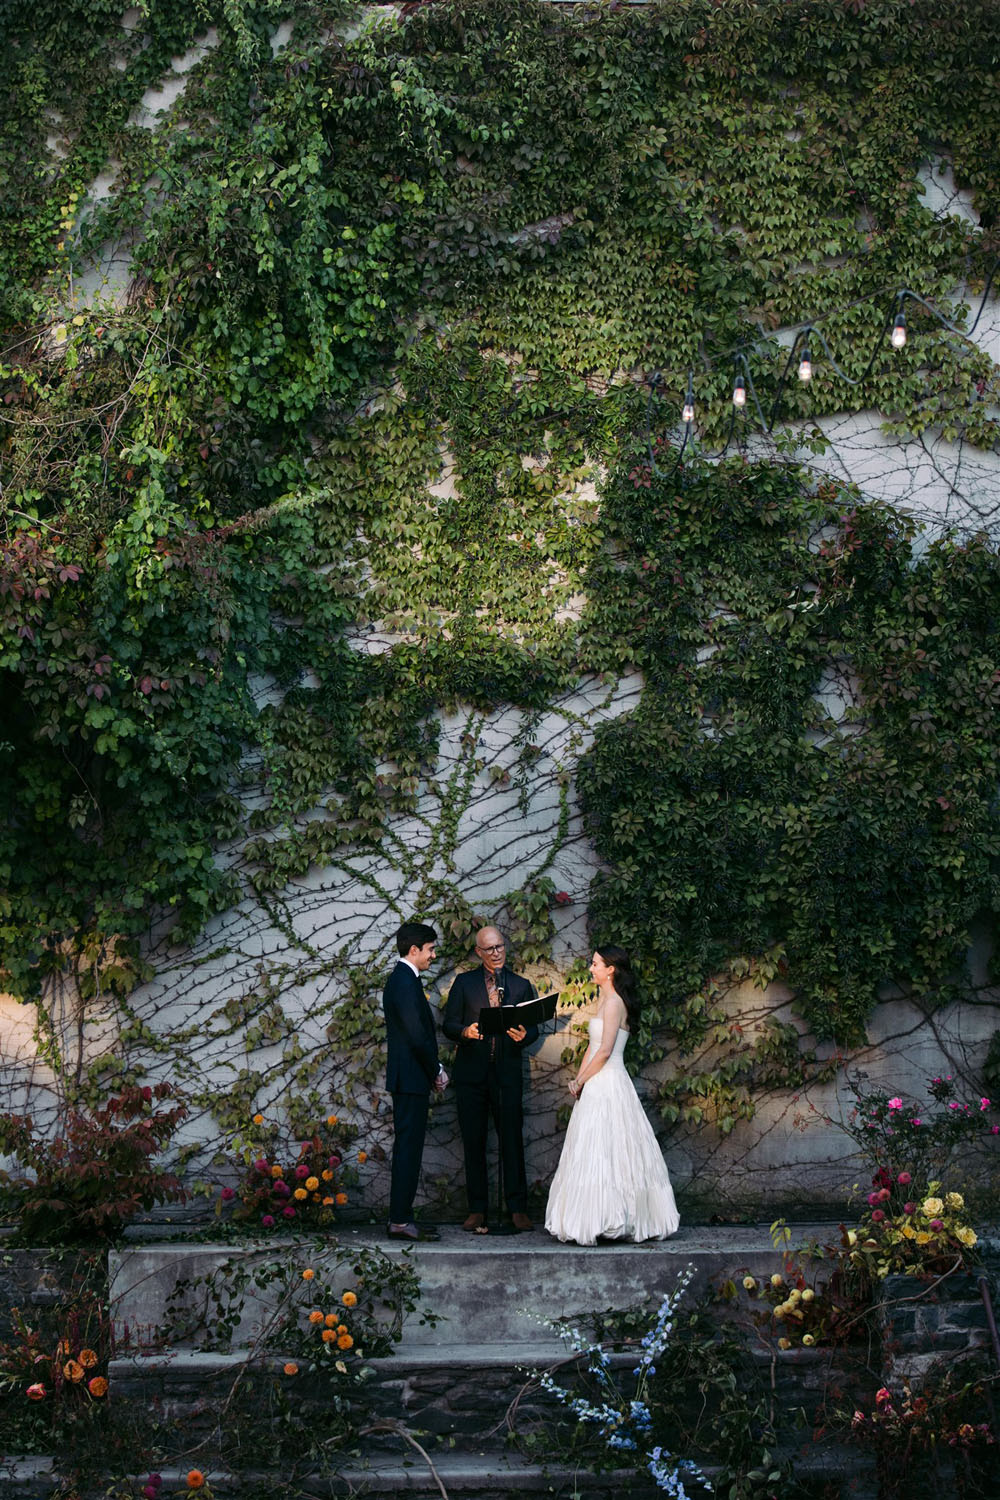 La boda en el jardín secreto de dos arquitectos centrada en el diseño